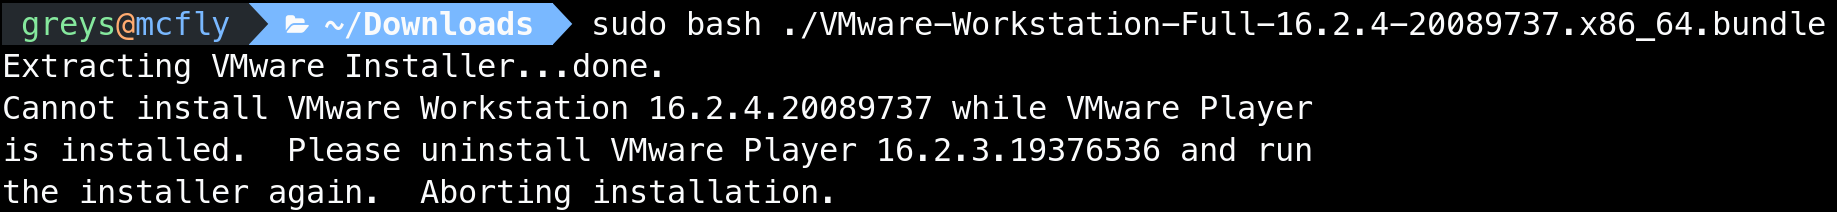 VMware Workstation Needs VMware Player Uninstalled